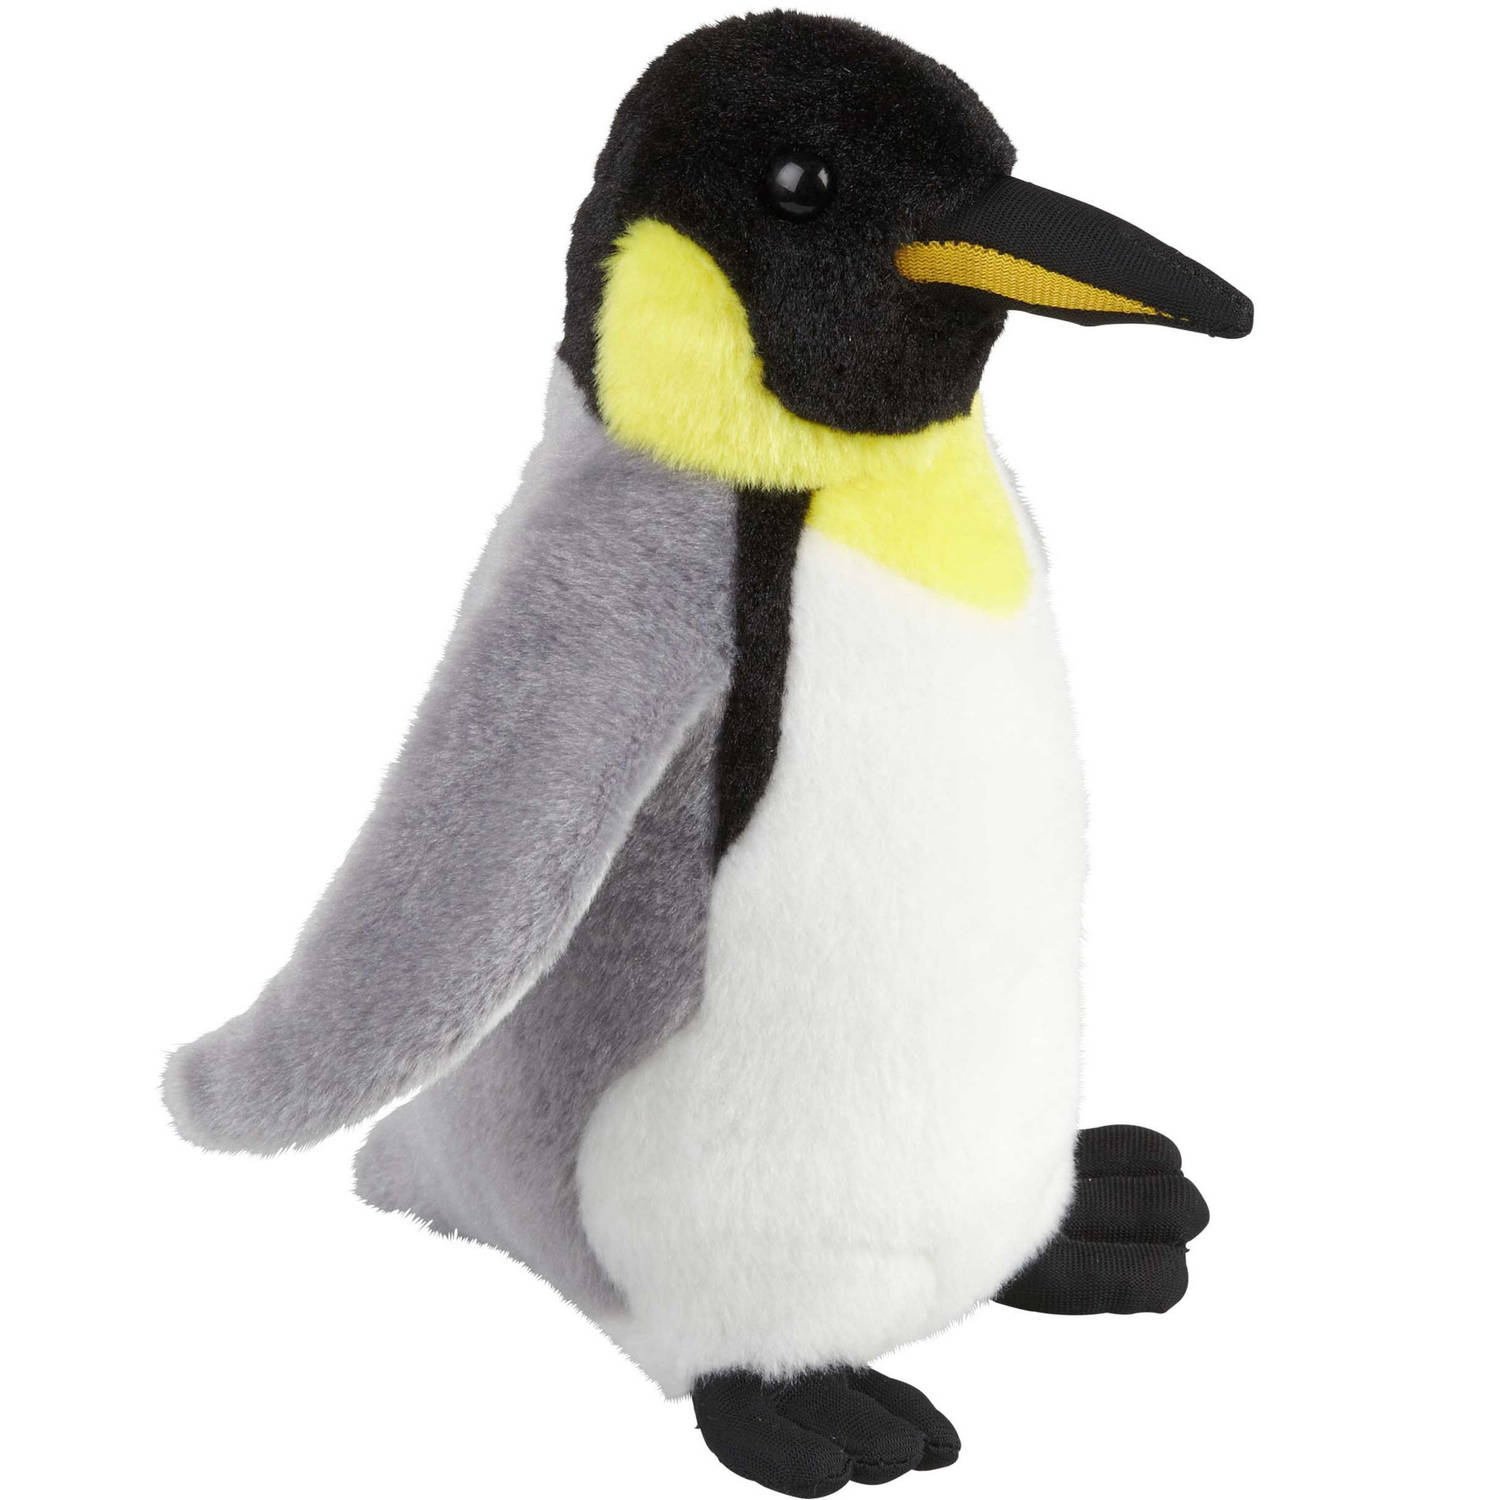 Pluche knuffel dieren Konings Pinguin vogel van 18 cm - Speelgoed knuffels pooldieren - Leuk als cadeau voor kinderen